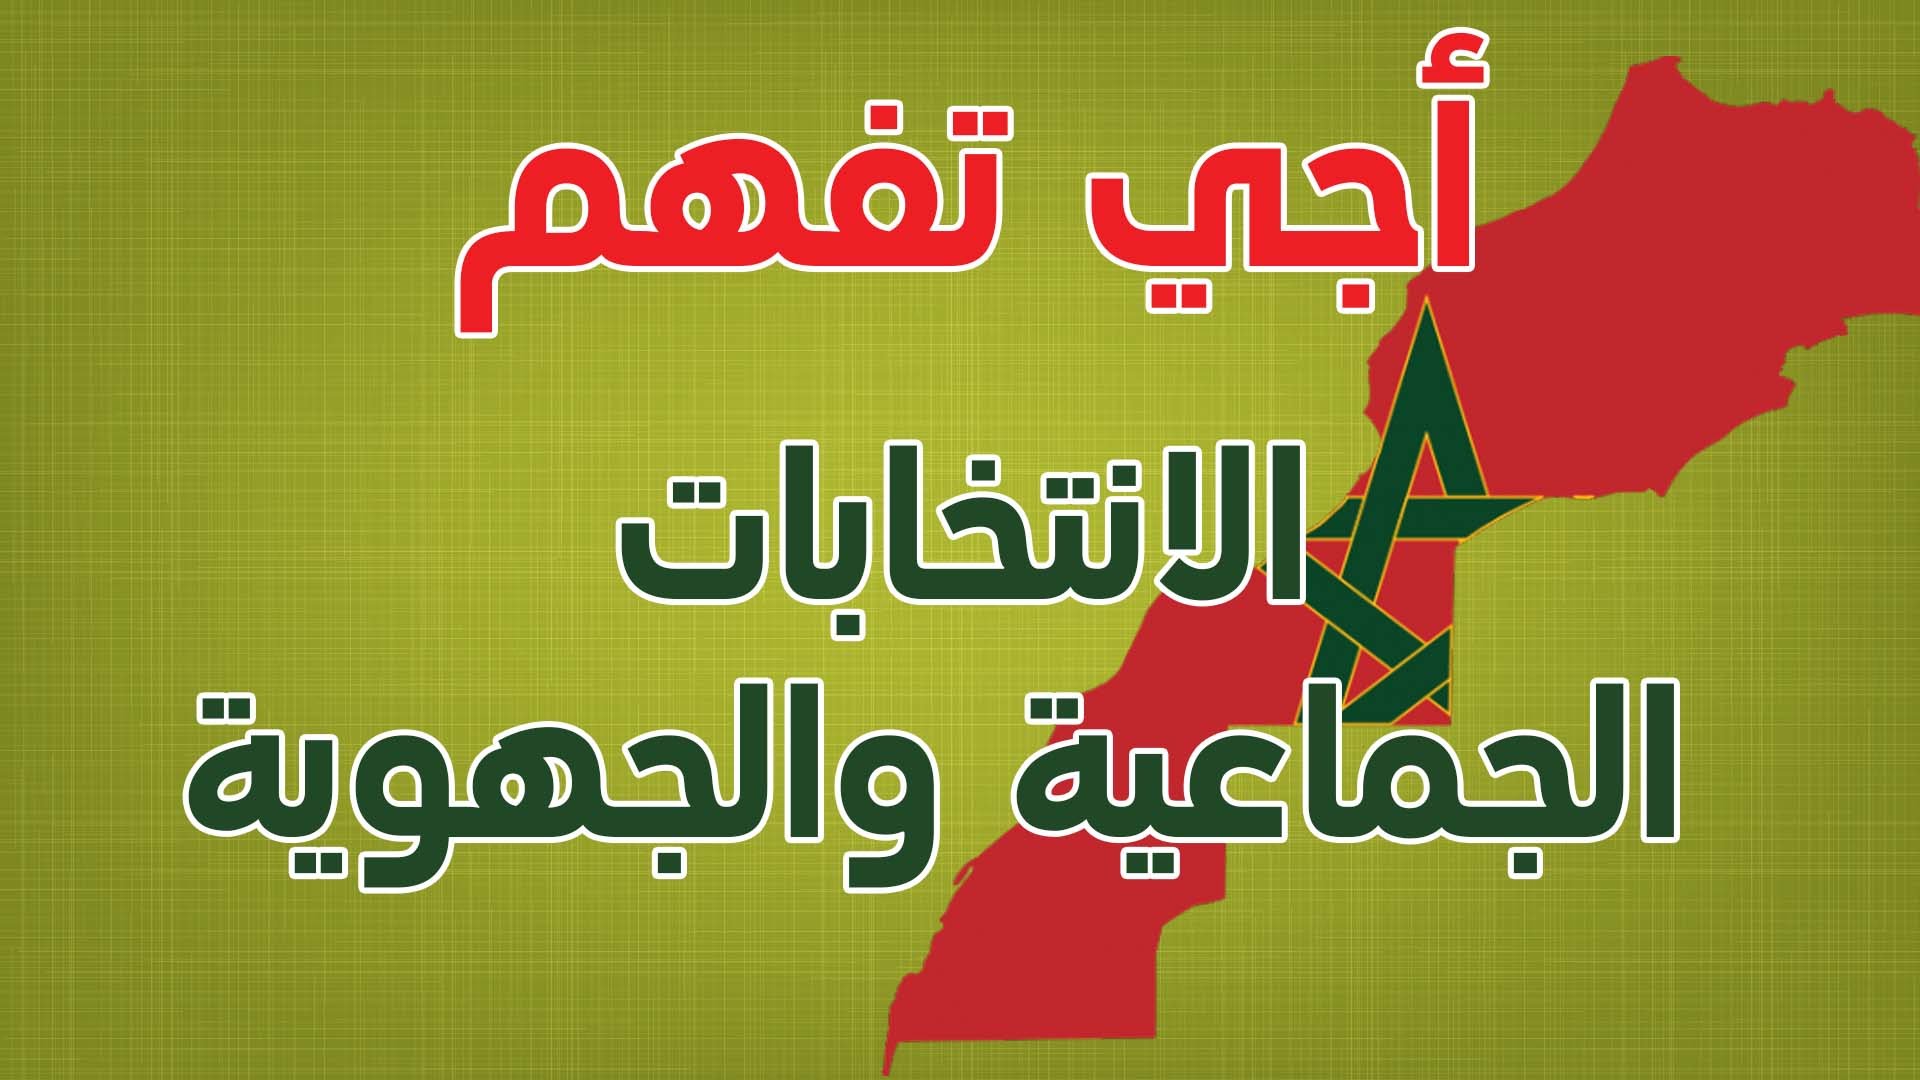 شرح مبسط ورائع للانتخابات الجماعية والجهوية بالمغرب 2015